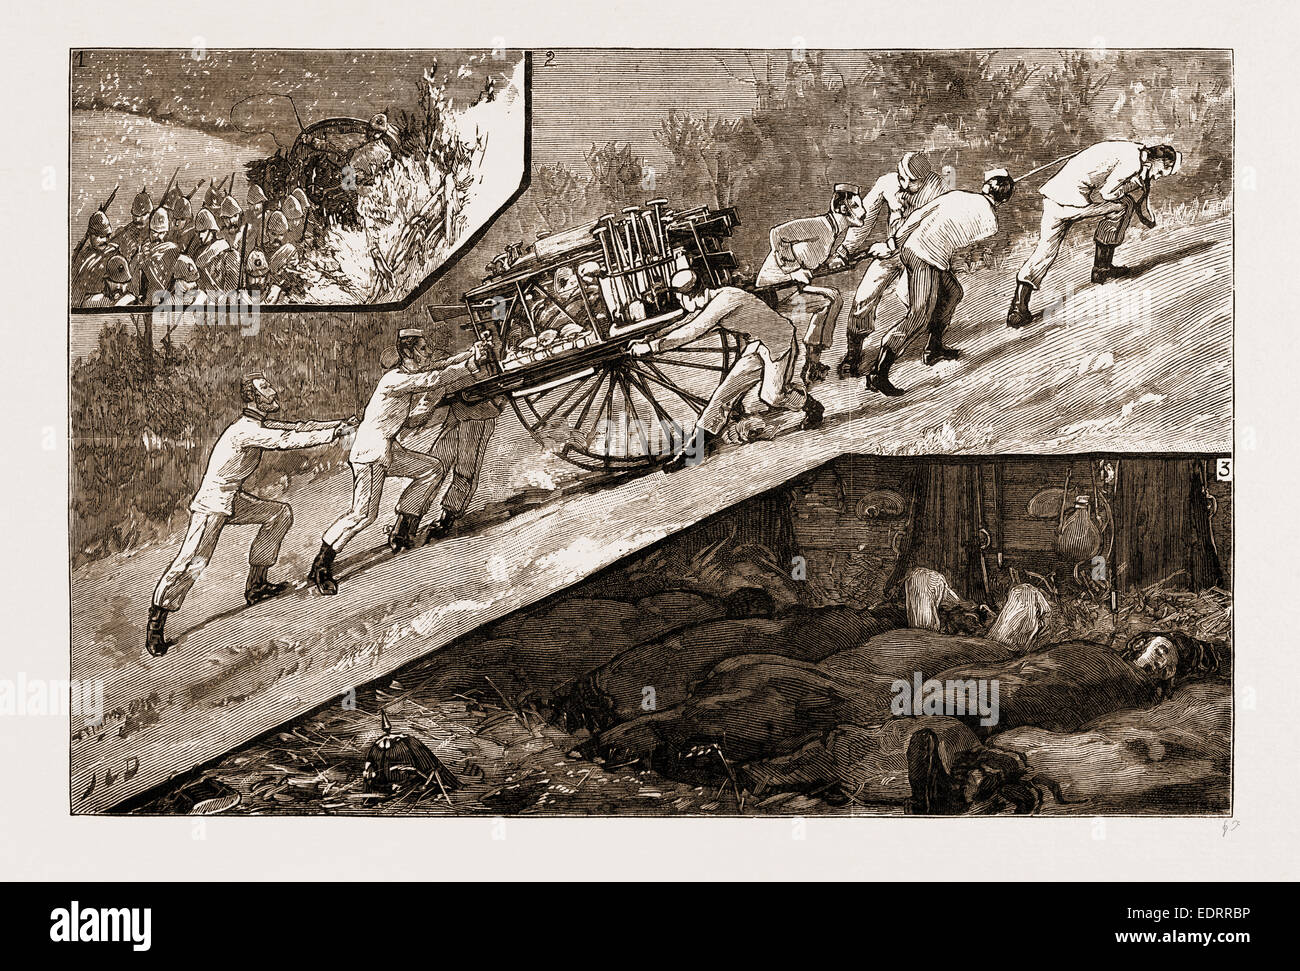 DEN FREIWILLIGEN BEITRAG IN BRIGHTON: DER MARSCH NACH UNTEN DER GEPÄCK-GARDE VON DEN KÜNSTLERN CORPS (20. MIDDLESEX), 1883 Stockfoto